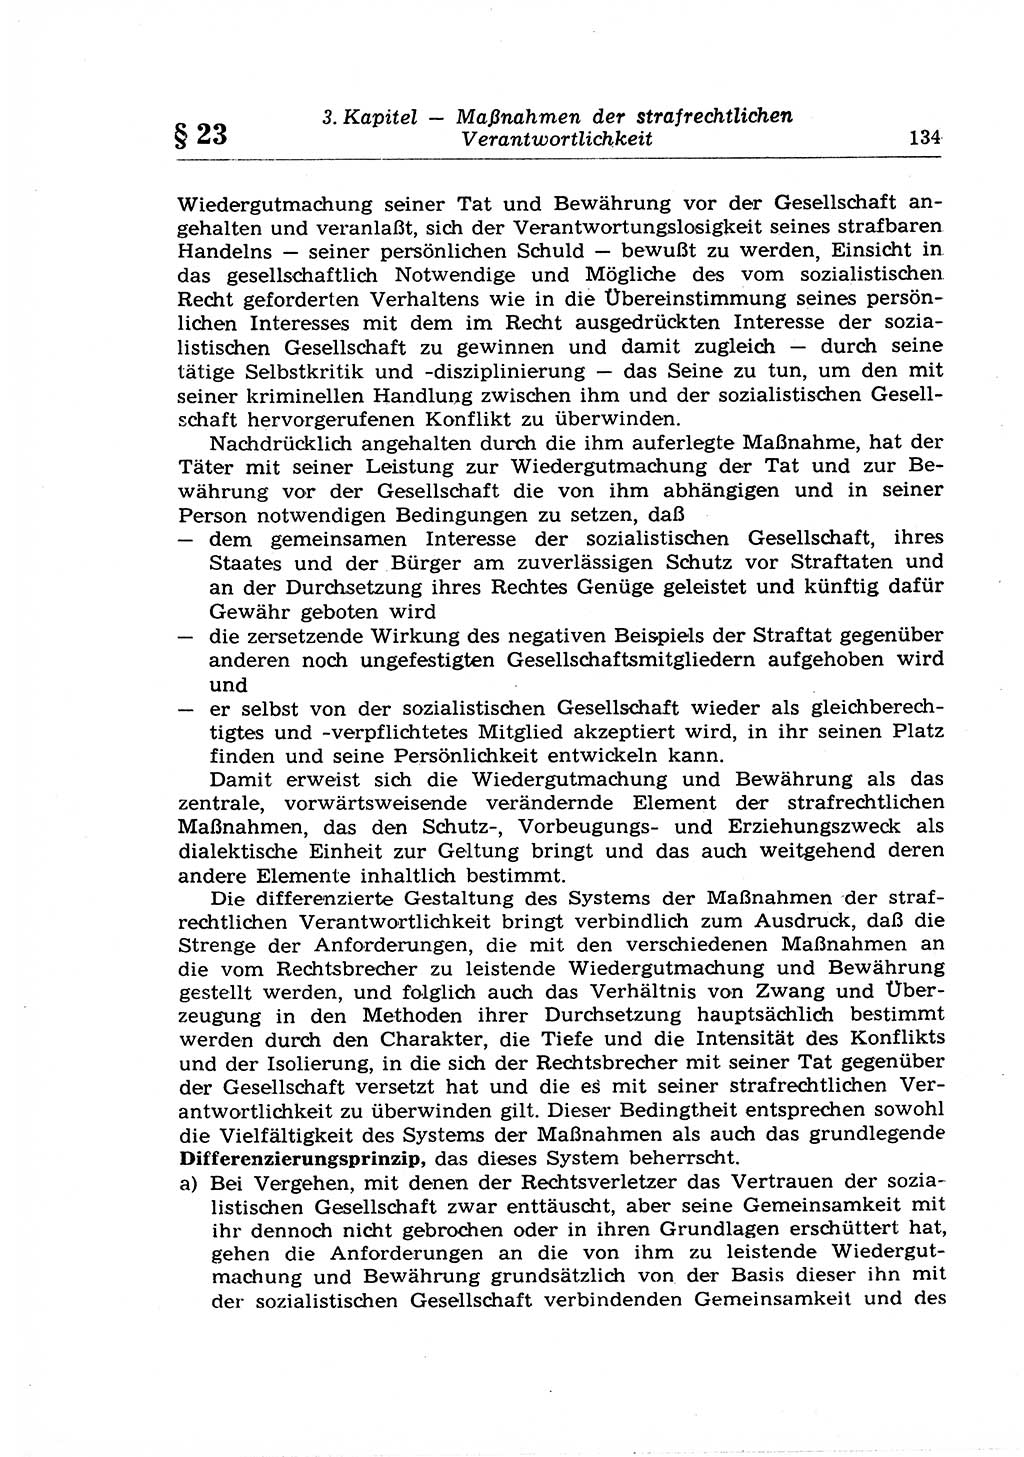 Strafrecht der Deutschen Demokratischen Republik (DDR), Lehrkommentar zum Strafgesetzbuch (StGB), Allgemeiner Teil 1969, Seite 134 (Strafr. DDR Lehrkomm. StGB AT 1969, S. 134)